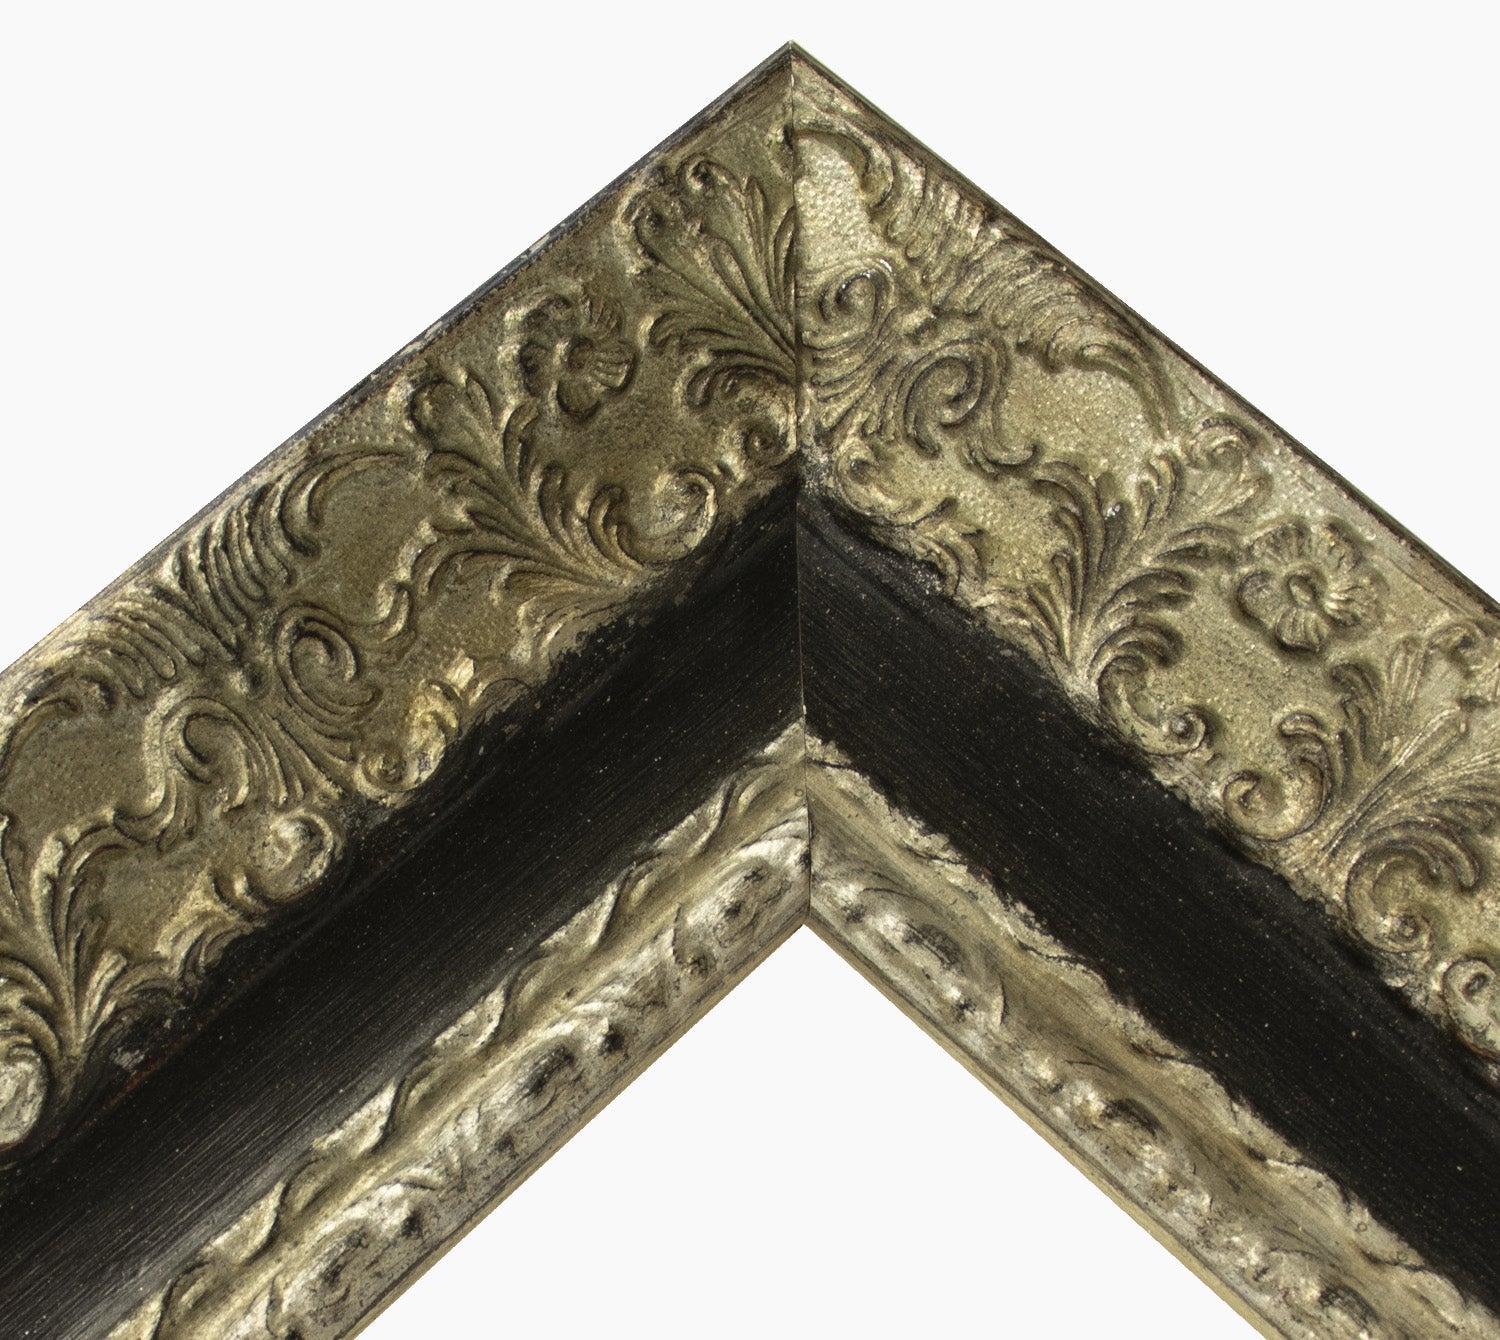 4900.602 cadre en bois à la feuille d' argent gorge noire mesure de profil 100x50 mm Lombarda cornici S.n.c.